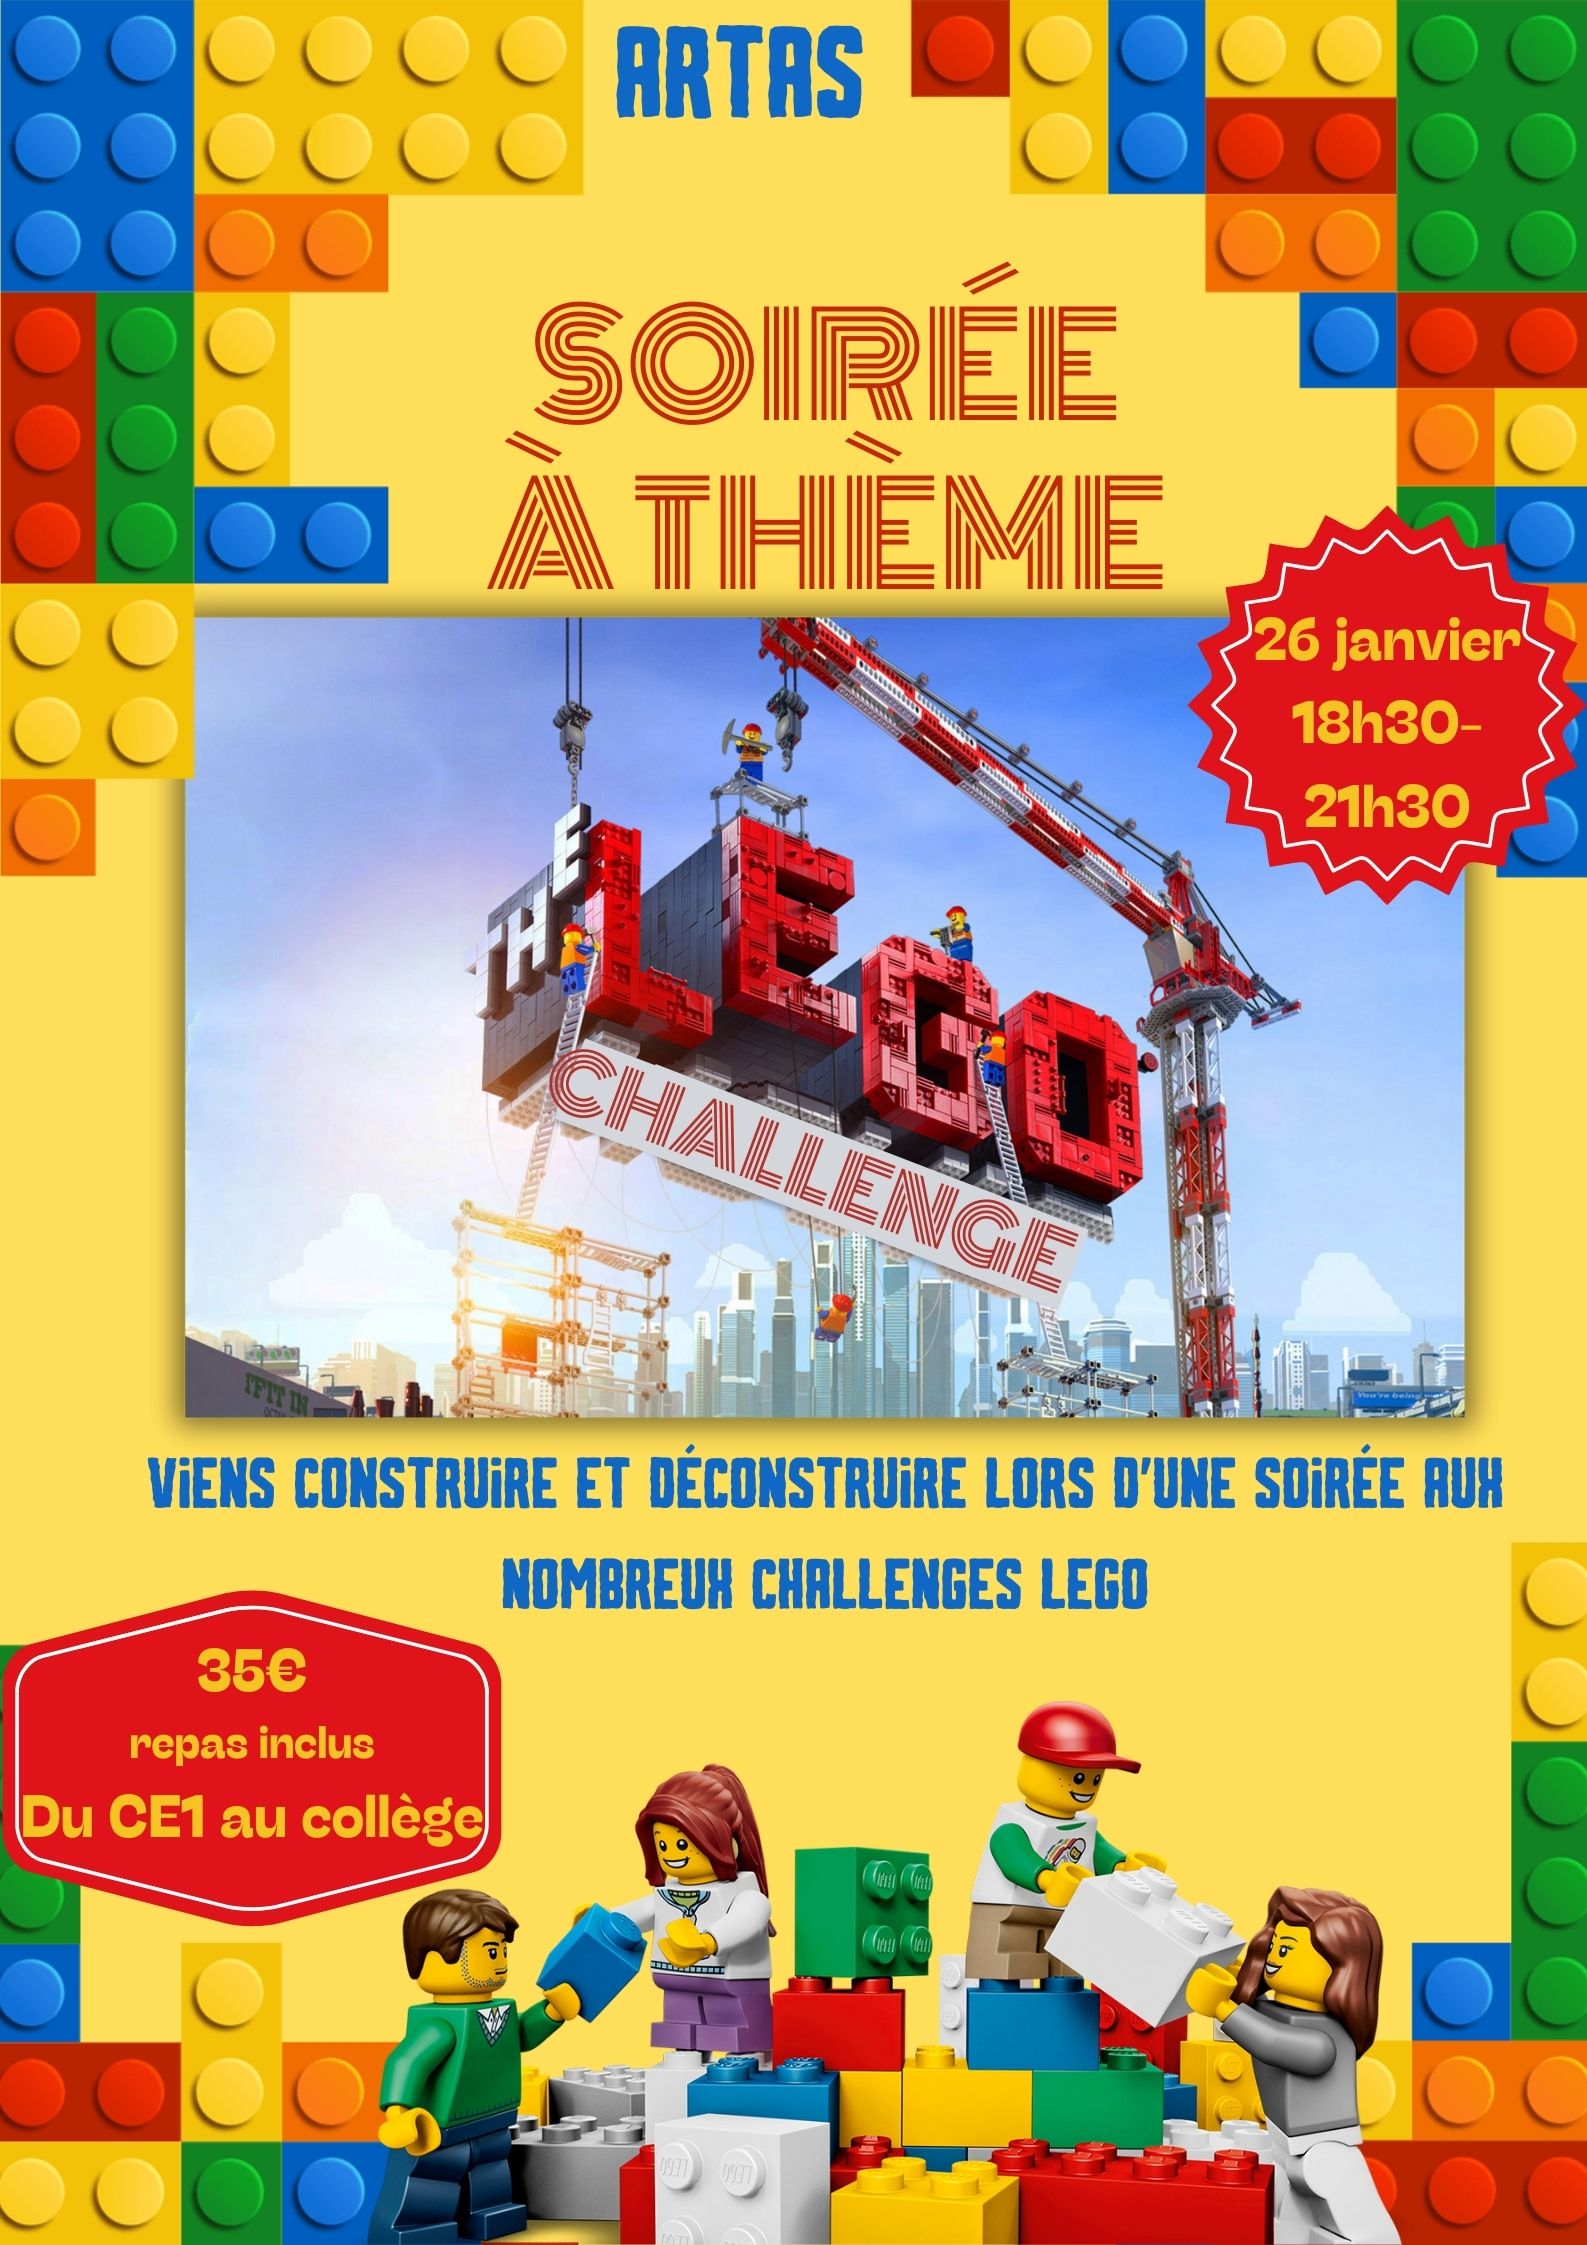 Soirée à thème Lego challenge